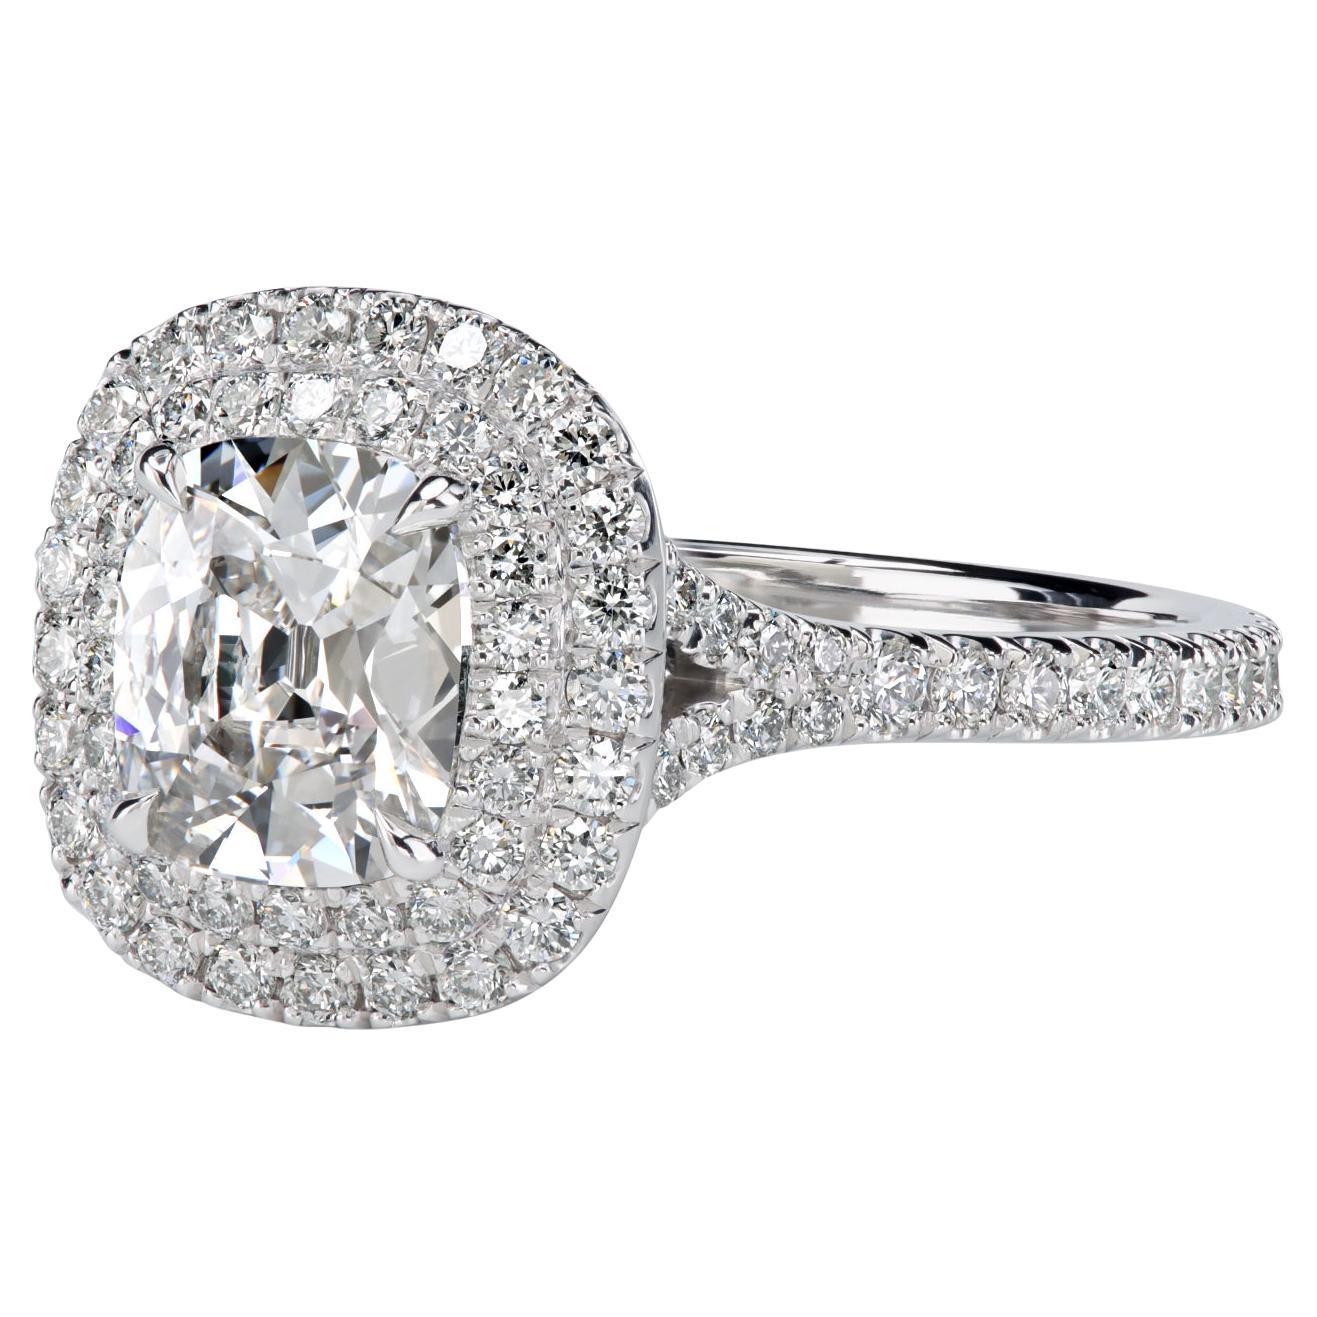 Leon Megé Platinum Double Halo Ring with 1.01-carat Antique Cut Cushion Diamond